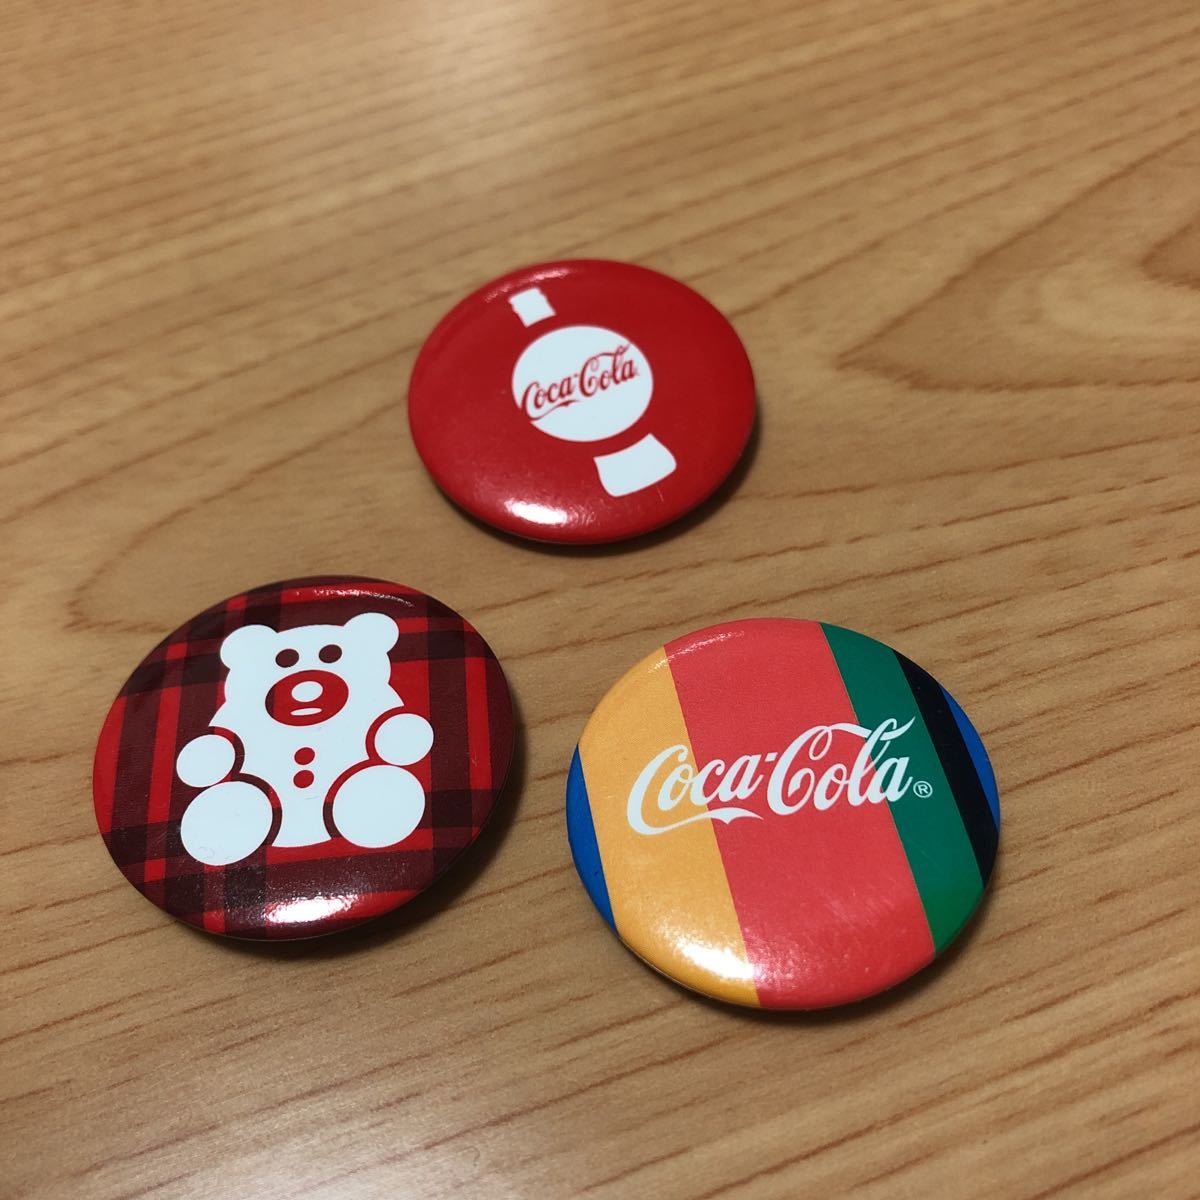 Coca-Cola☆コカコーラ 缶バッチ3個セットの画像1